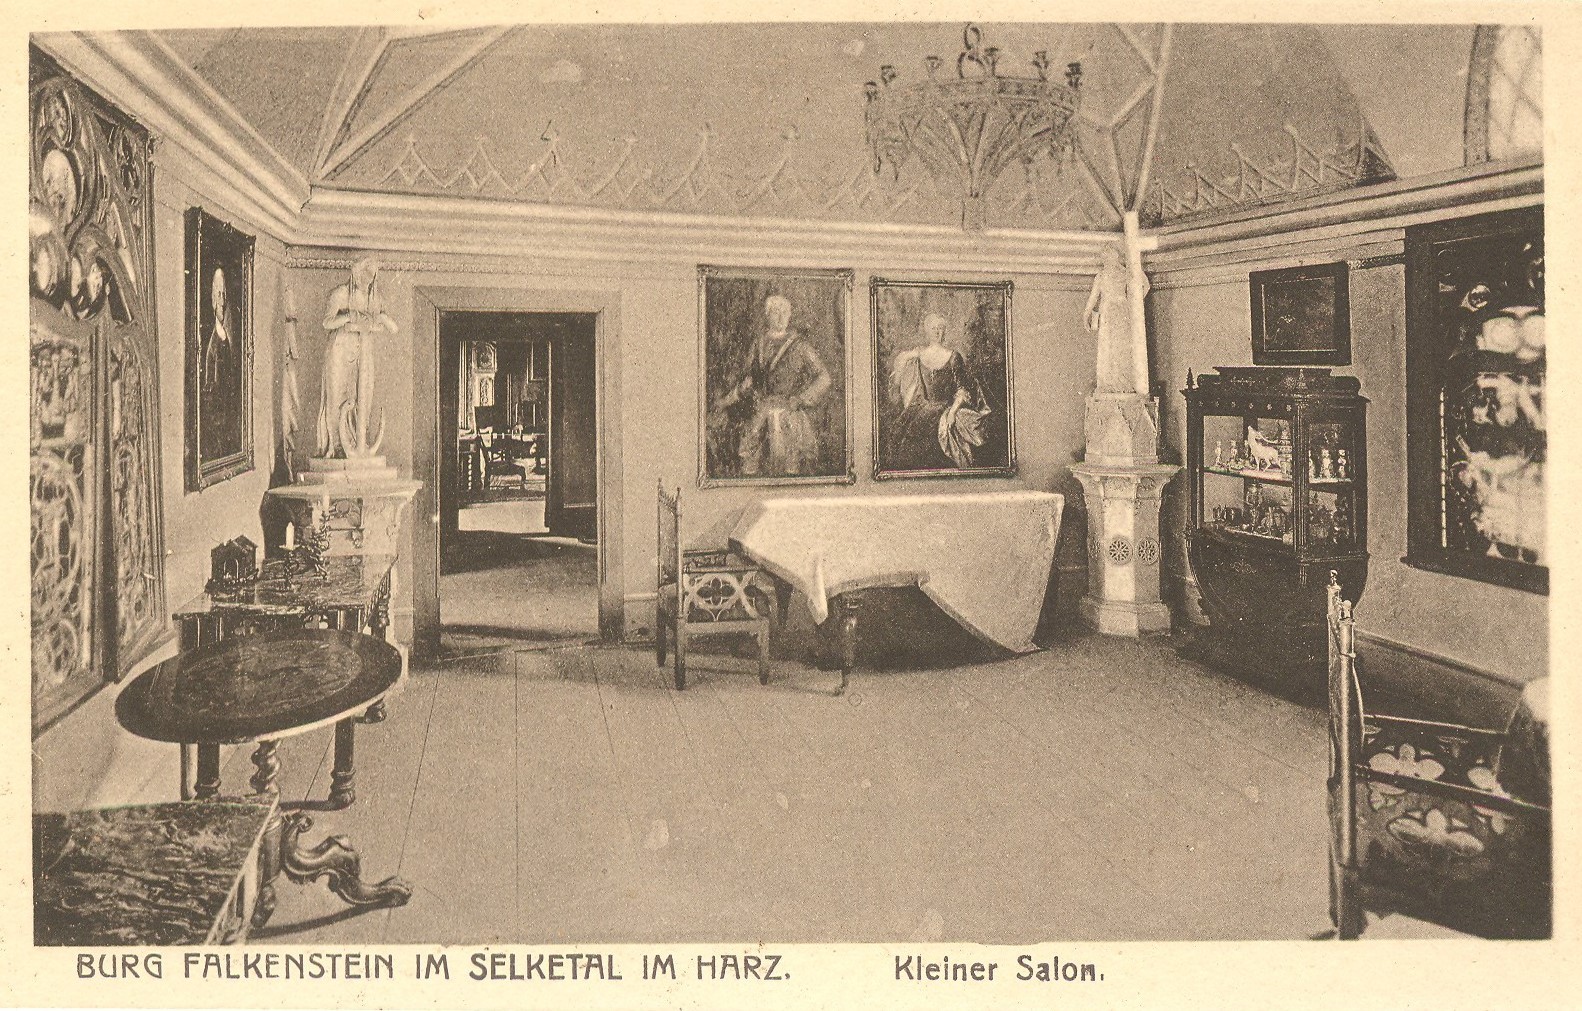 Ansichtskarte: Burg Falkenstein im Selketal. Kleiner Salon. (Kulturstiftung Sachsen-Anhalt CC BY-NC-SA)